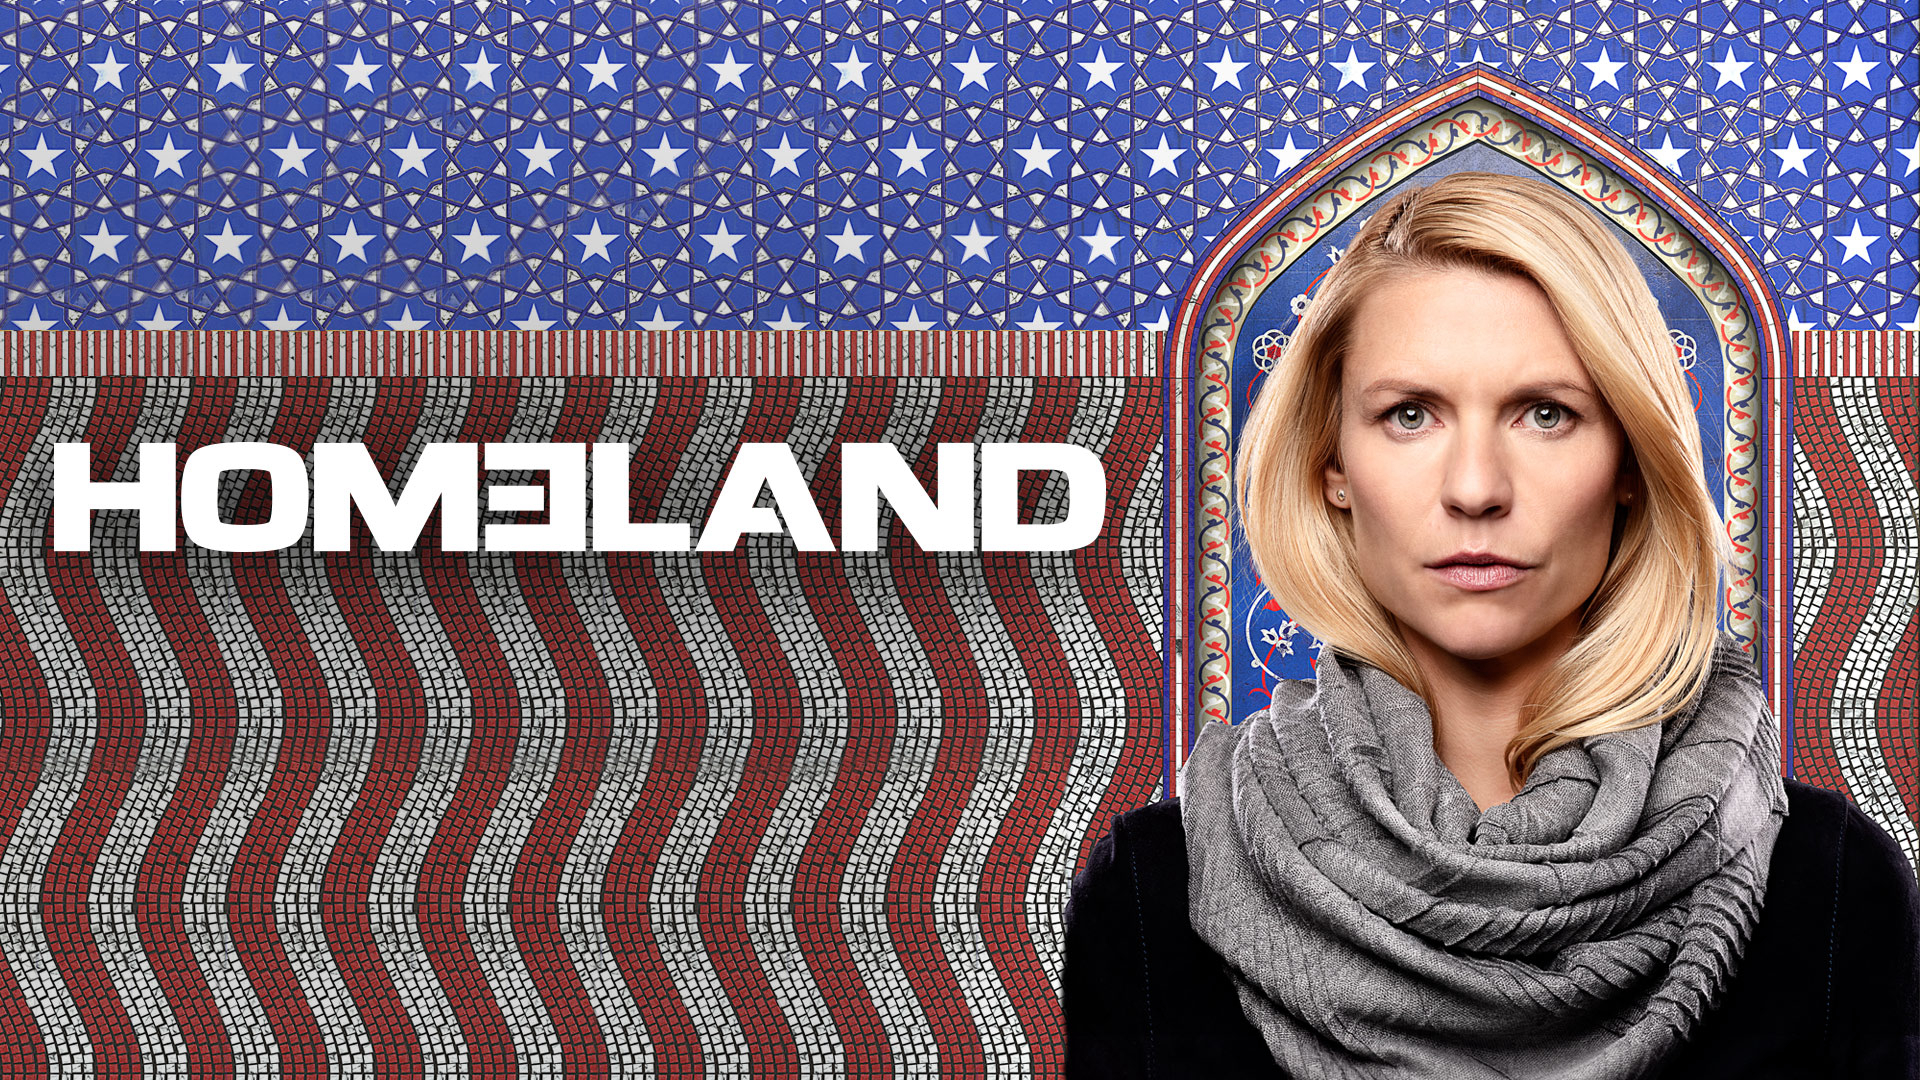 Homeland (Season 8) / Homeland (Season 8) (2011)